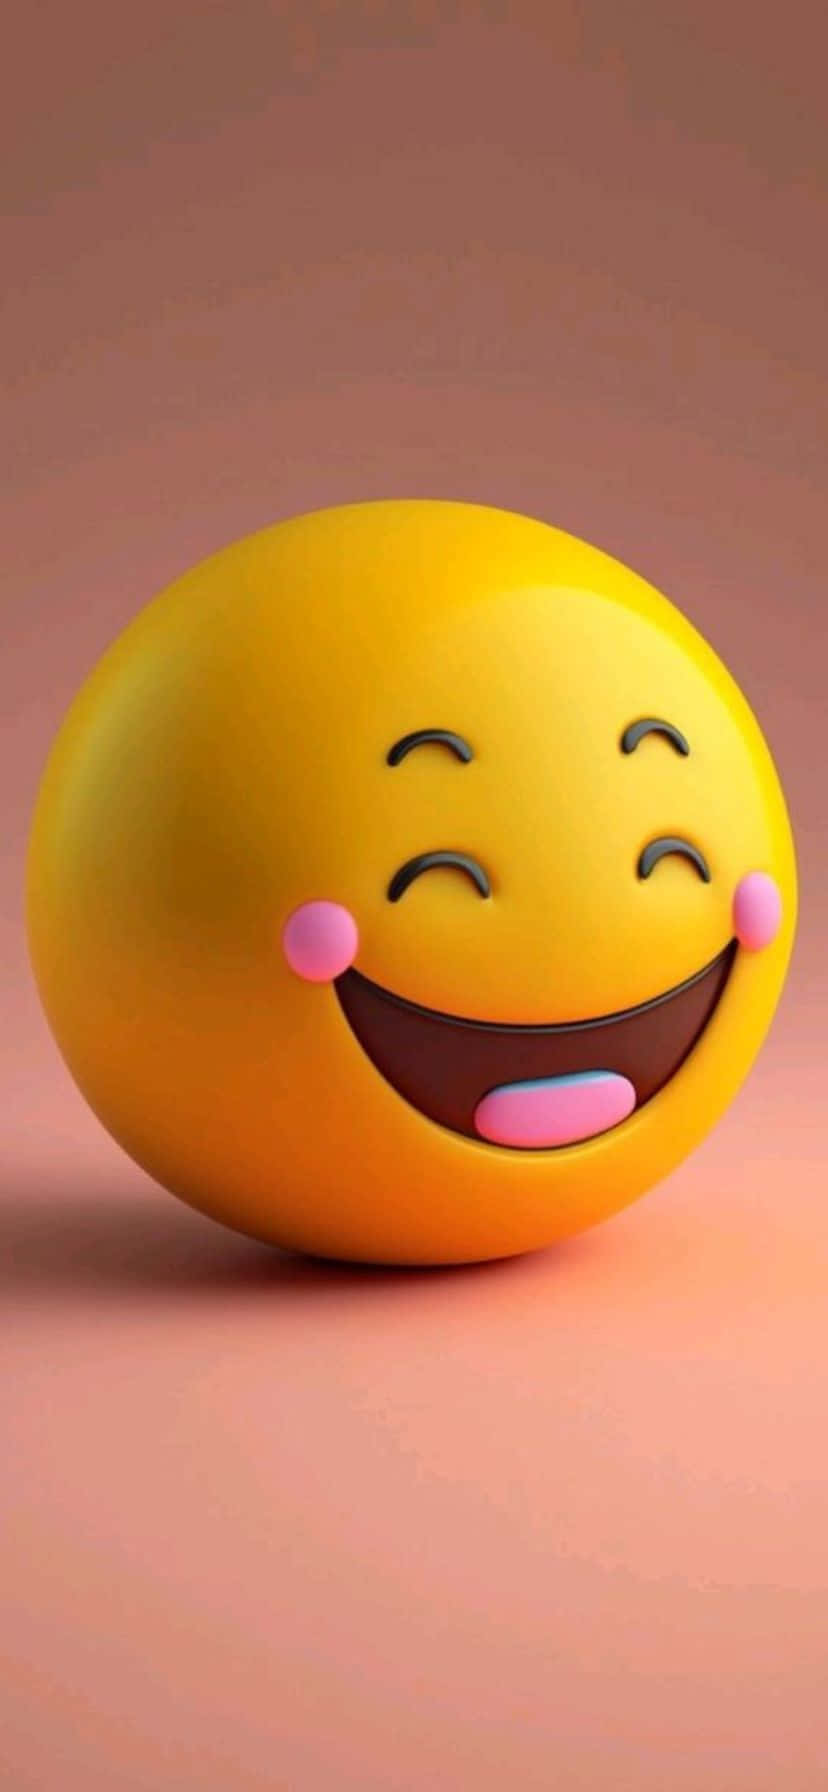 Laughing Emoji3 D Model.jpg Wallpaper